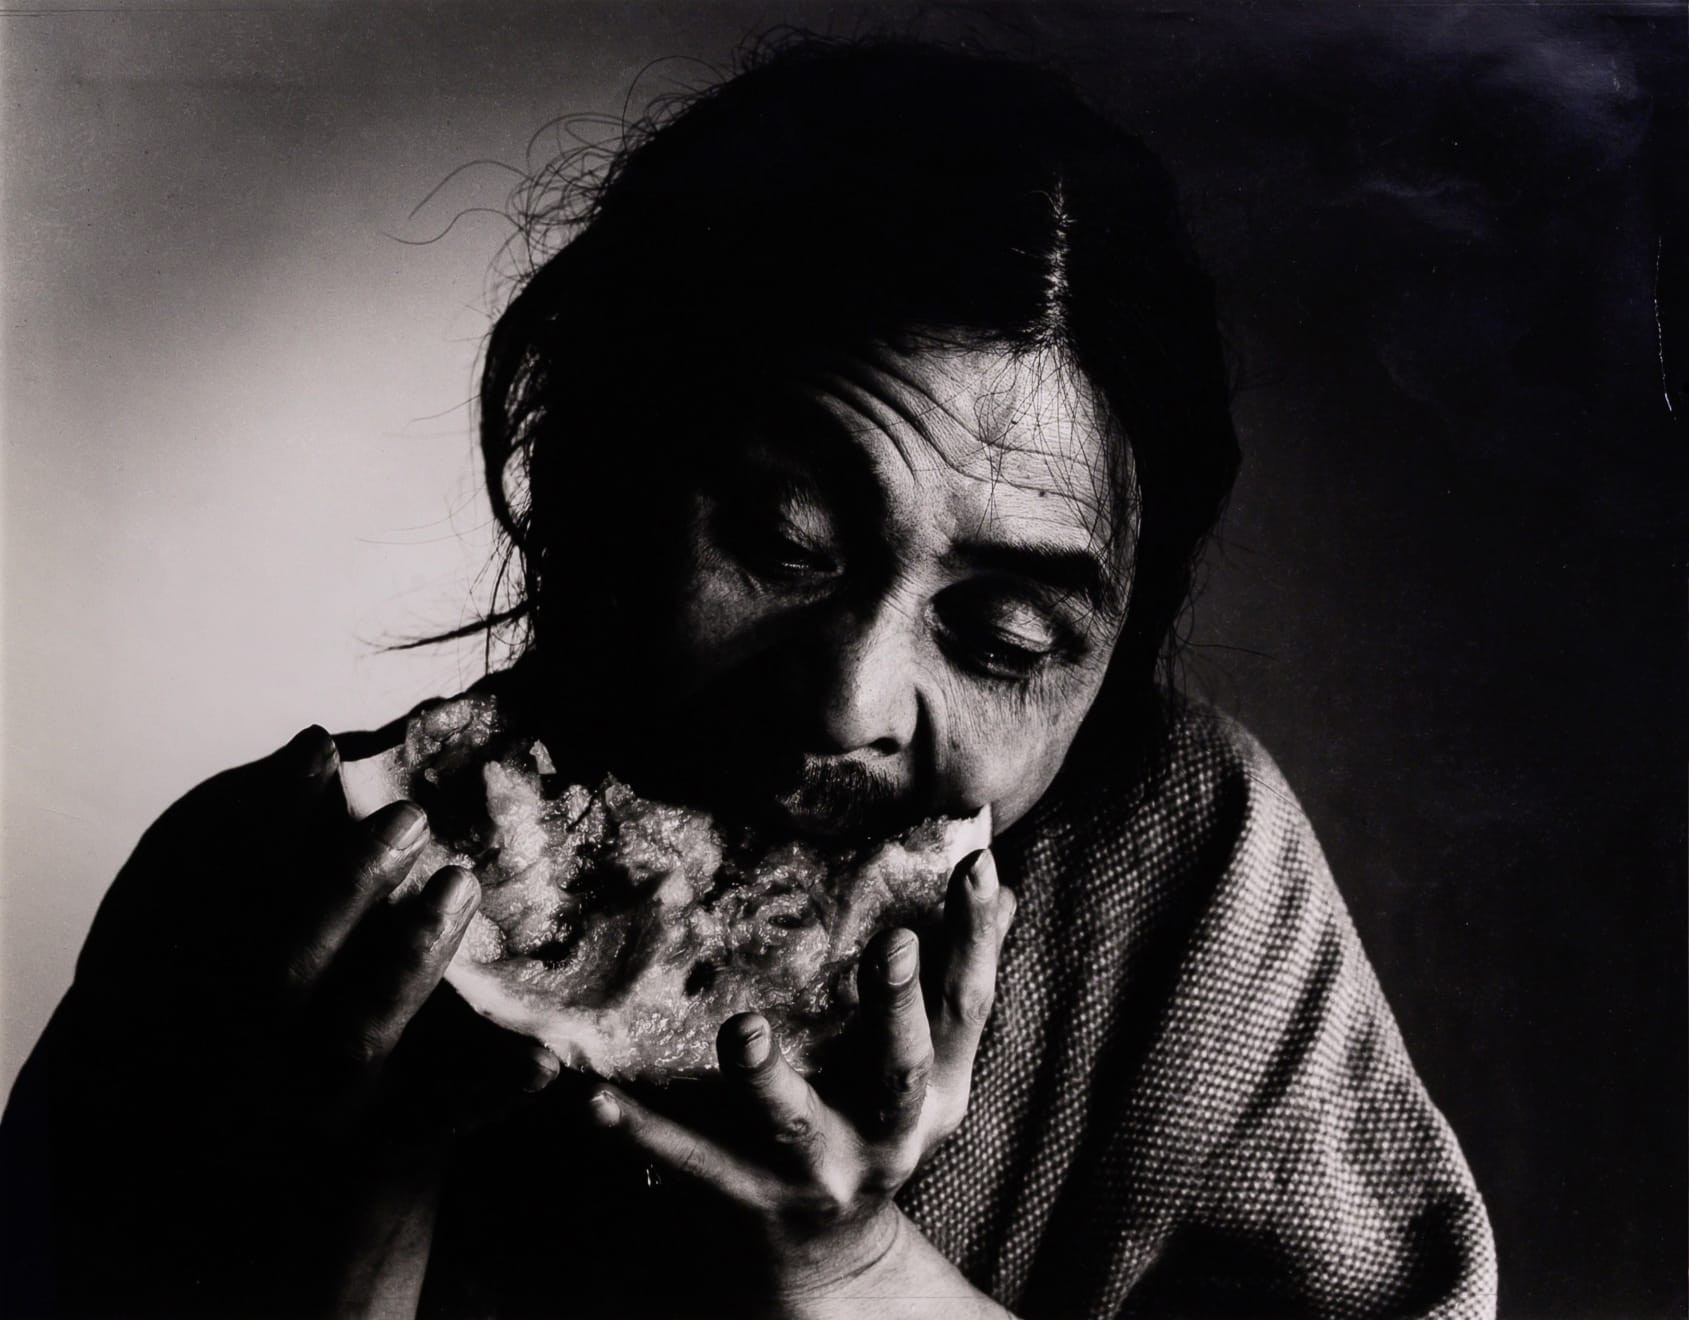 Тацуми Хидзиката. Фото: Масахиса Фукасэ (Masahisa Fukase), 1970